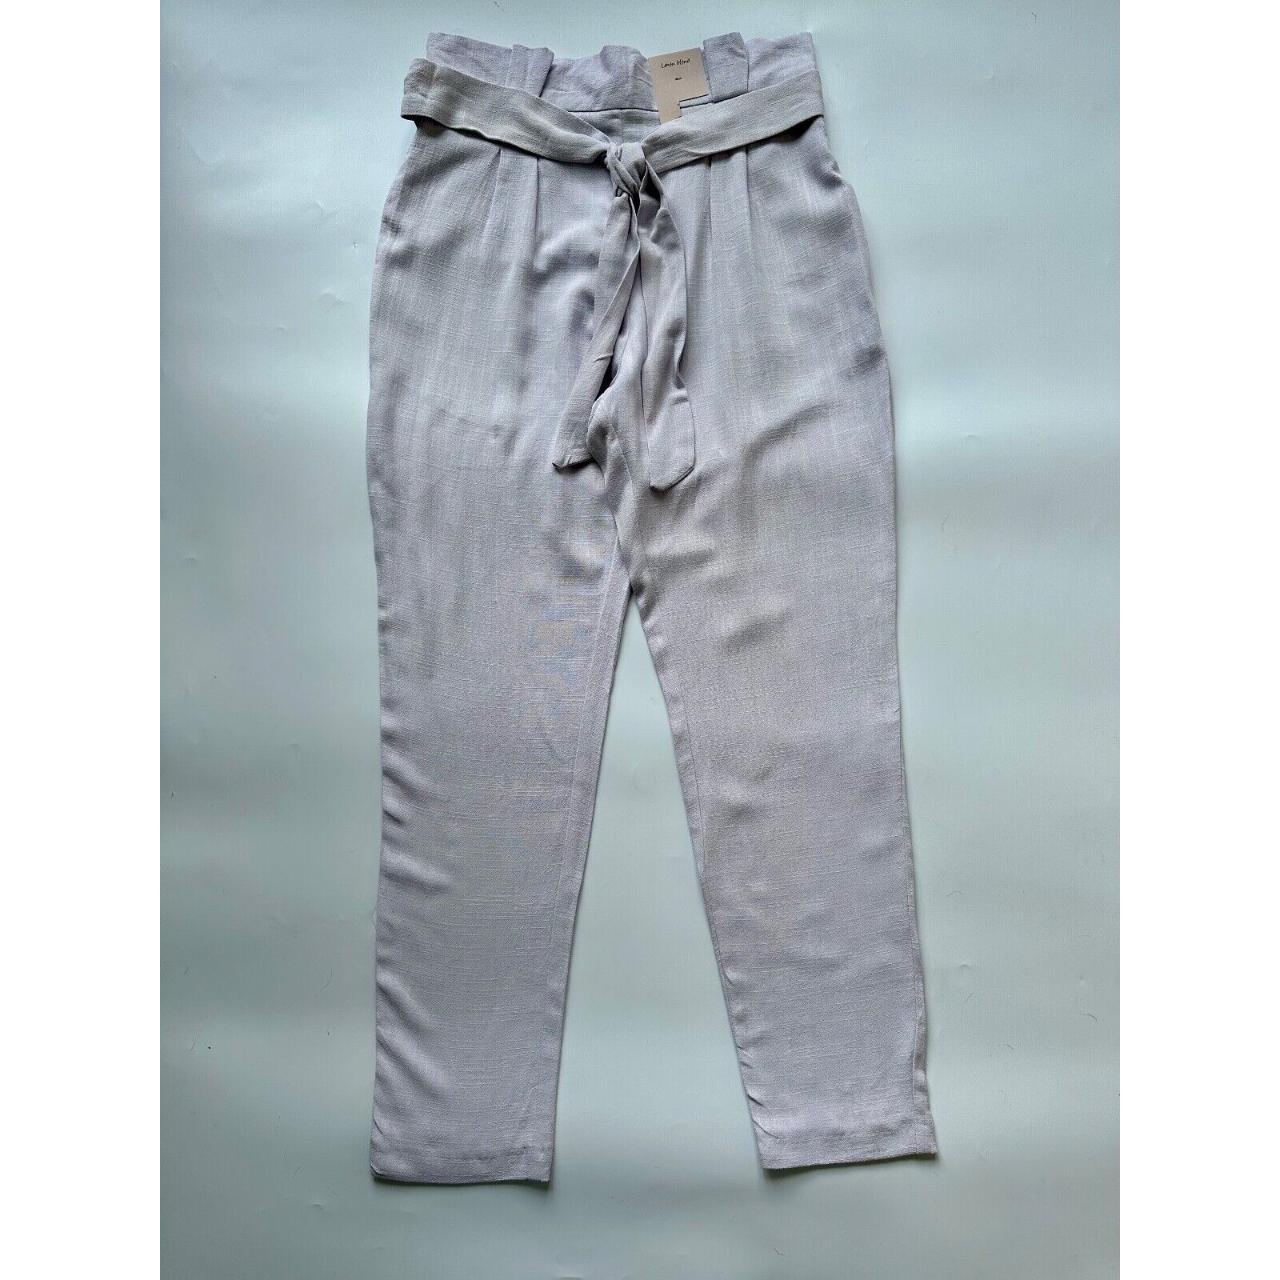 Womens TU White Linen Trousers Size 16/L30 – Preworn Ltd